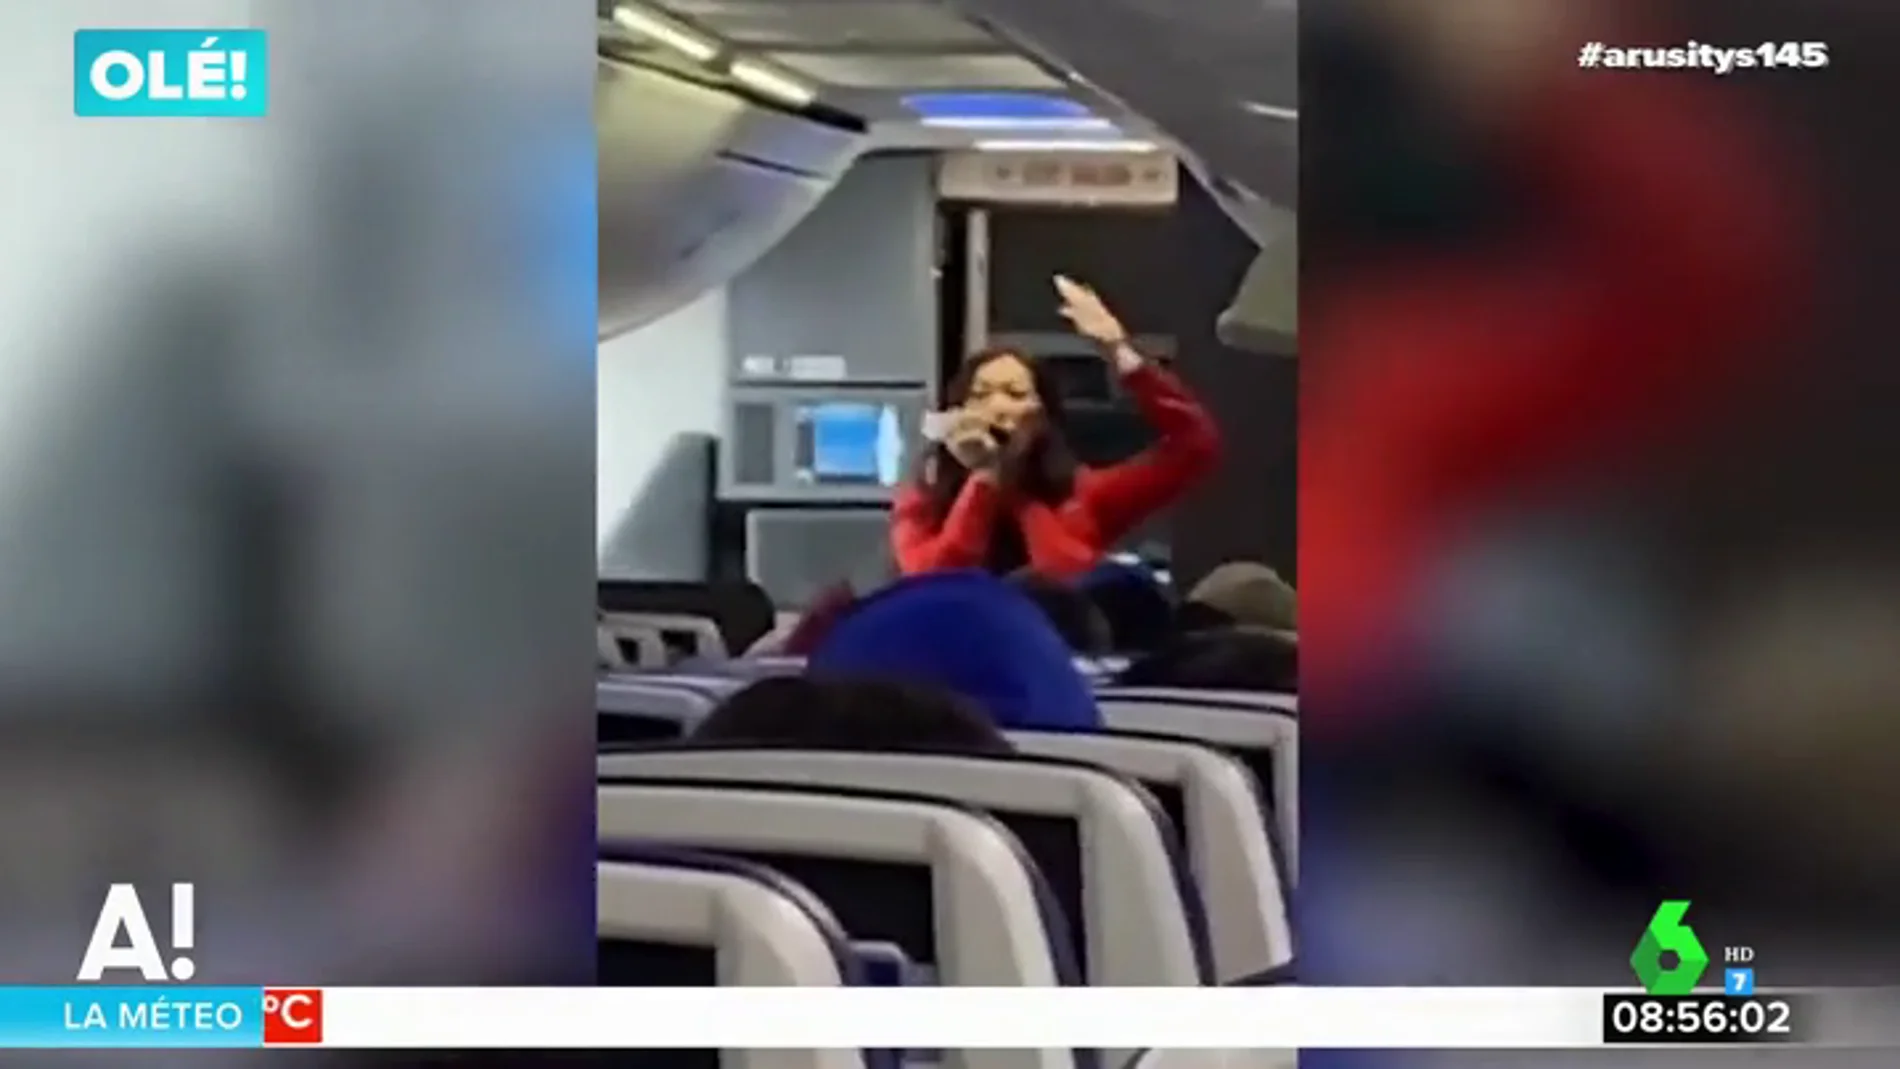 El sorprendente rap de una asistente de vuelvo para dar instrucciones a los pasajeros sin 'matarles' de aburrimiento